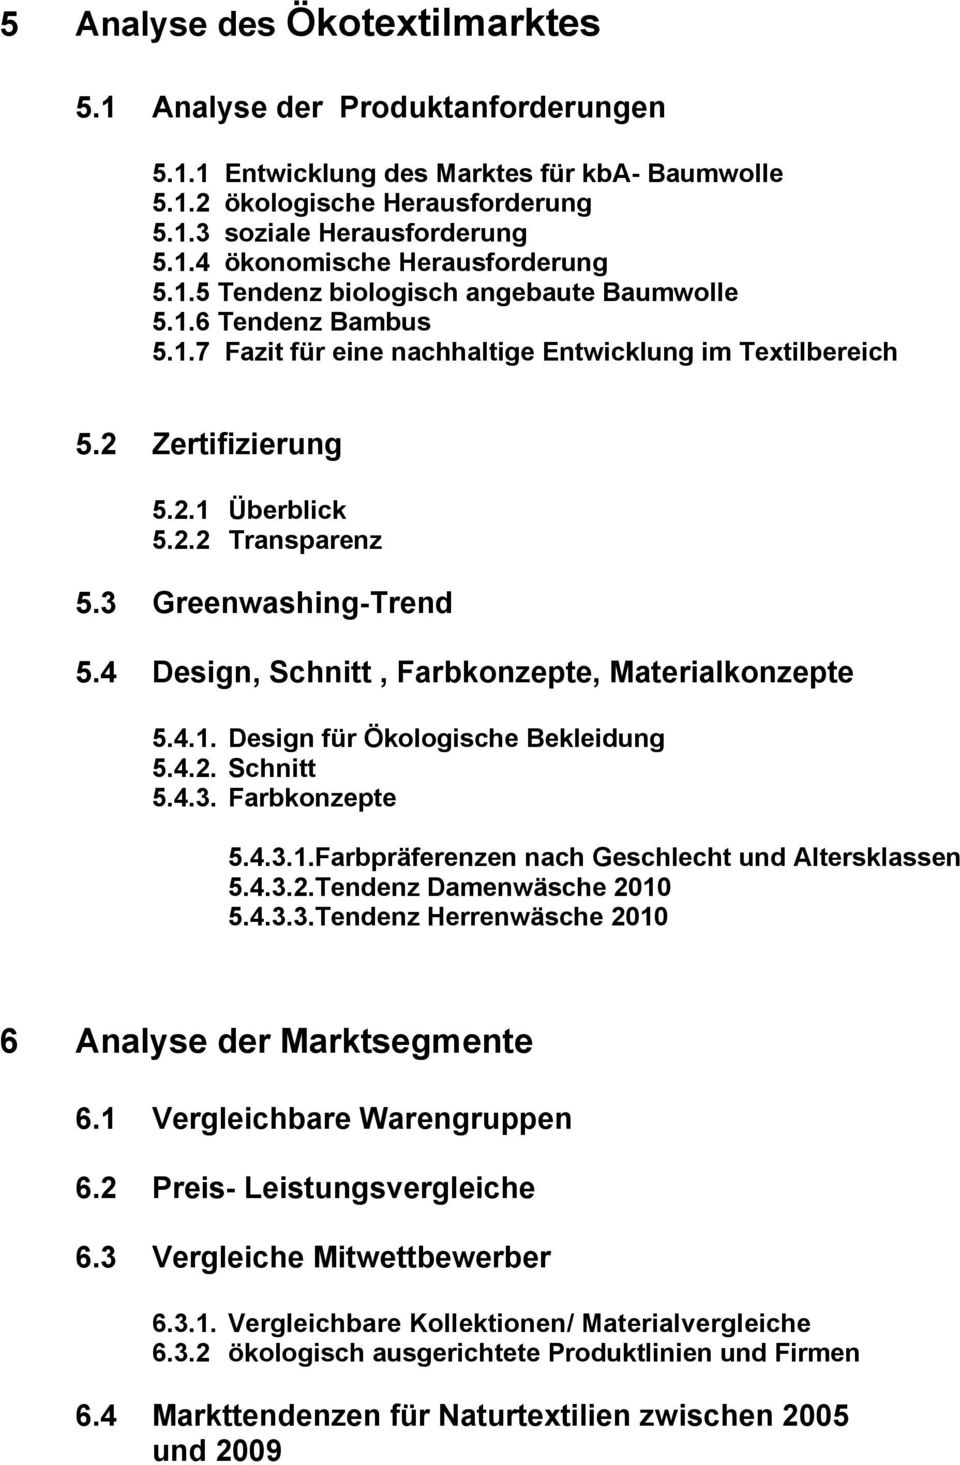 3 Greenwashing-Trend 5.4 Design, Schnitt, Farbkonzepte, Materialkonzepte 5.4.1. Design für Ökologische Bekleidung 5.4.2. Schnitt 5.4.3. Farbkonzepte 5.4.3.1.Farbpräferenzen nach Geschlecht und Altersklassen 5.